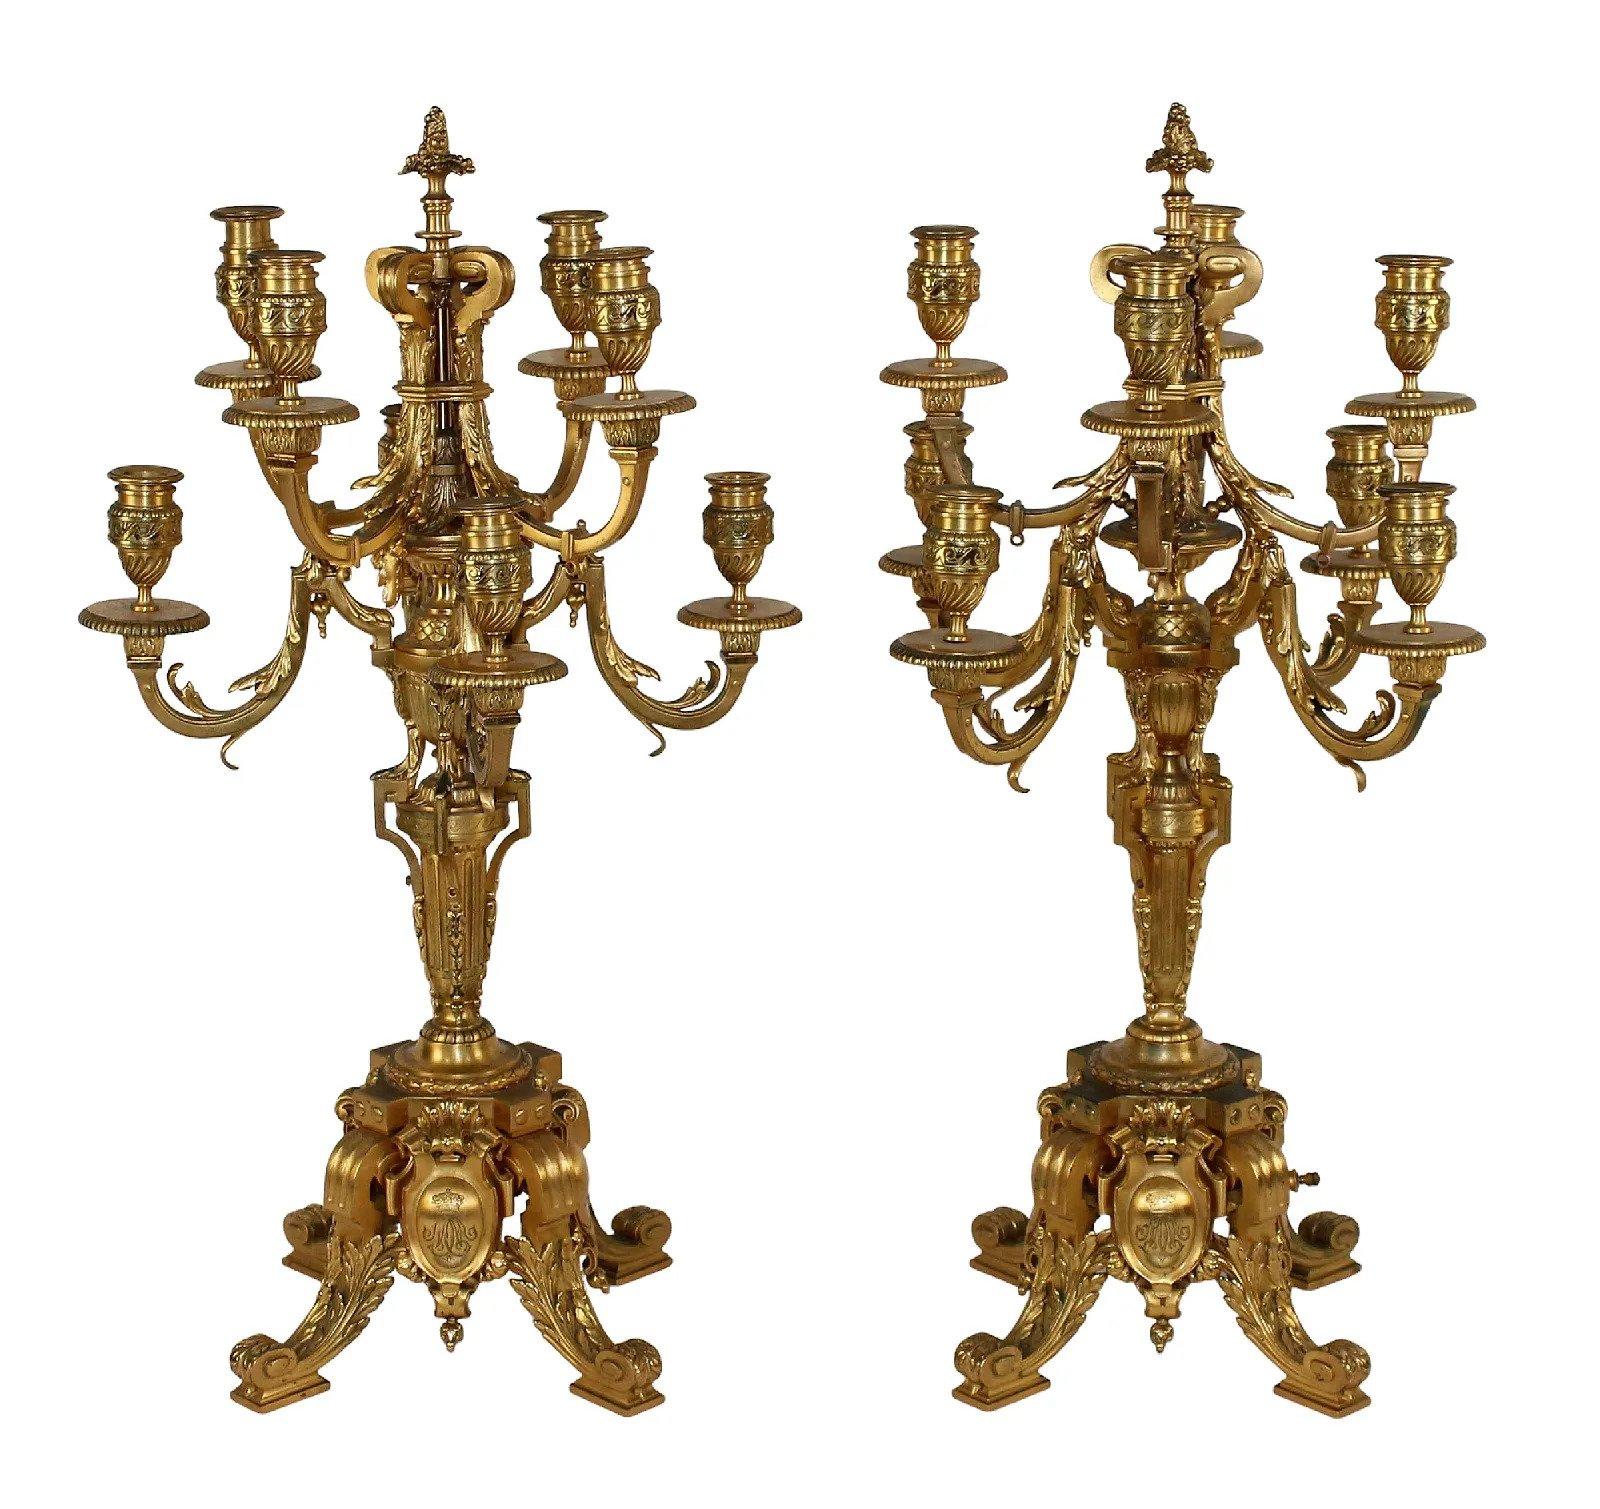 Ein hervorragendes Paar französischer 8-armiger Barbedienne-Kandelaber aus vergoldeter Bronze. Auf dem Sockel mit F, Barbedienne bezeichnet. Ende des 19. Jahrhunderts. Maße: Gesamthöhe 27